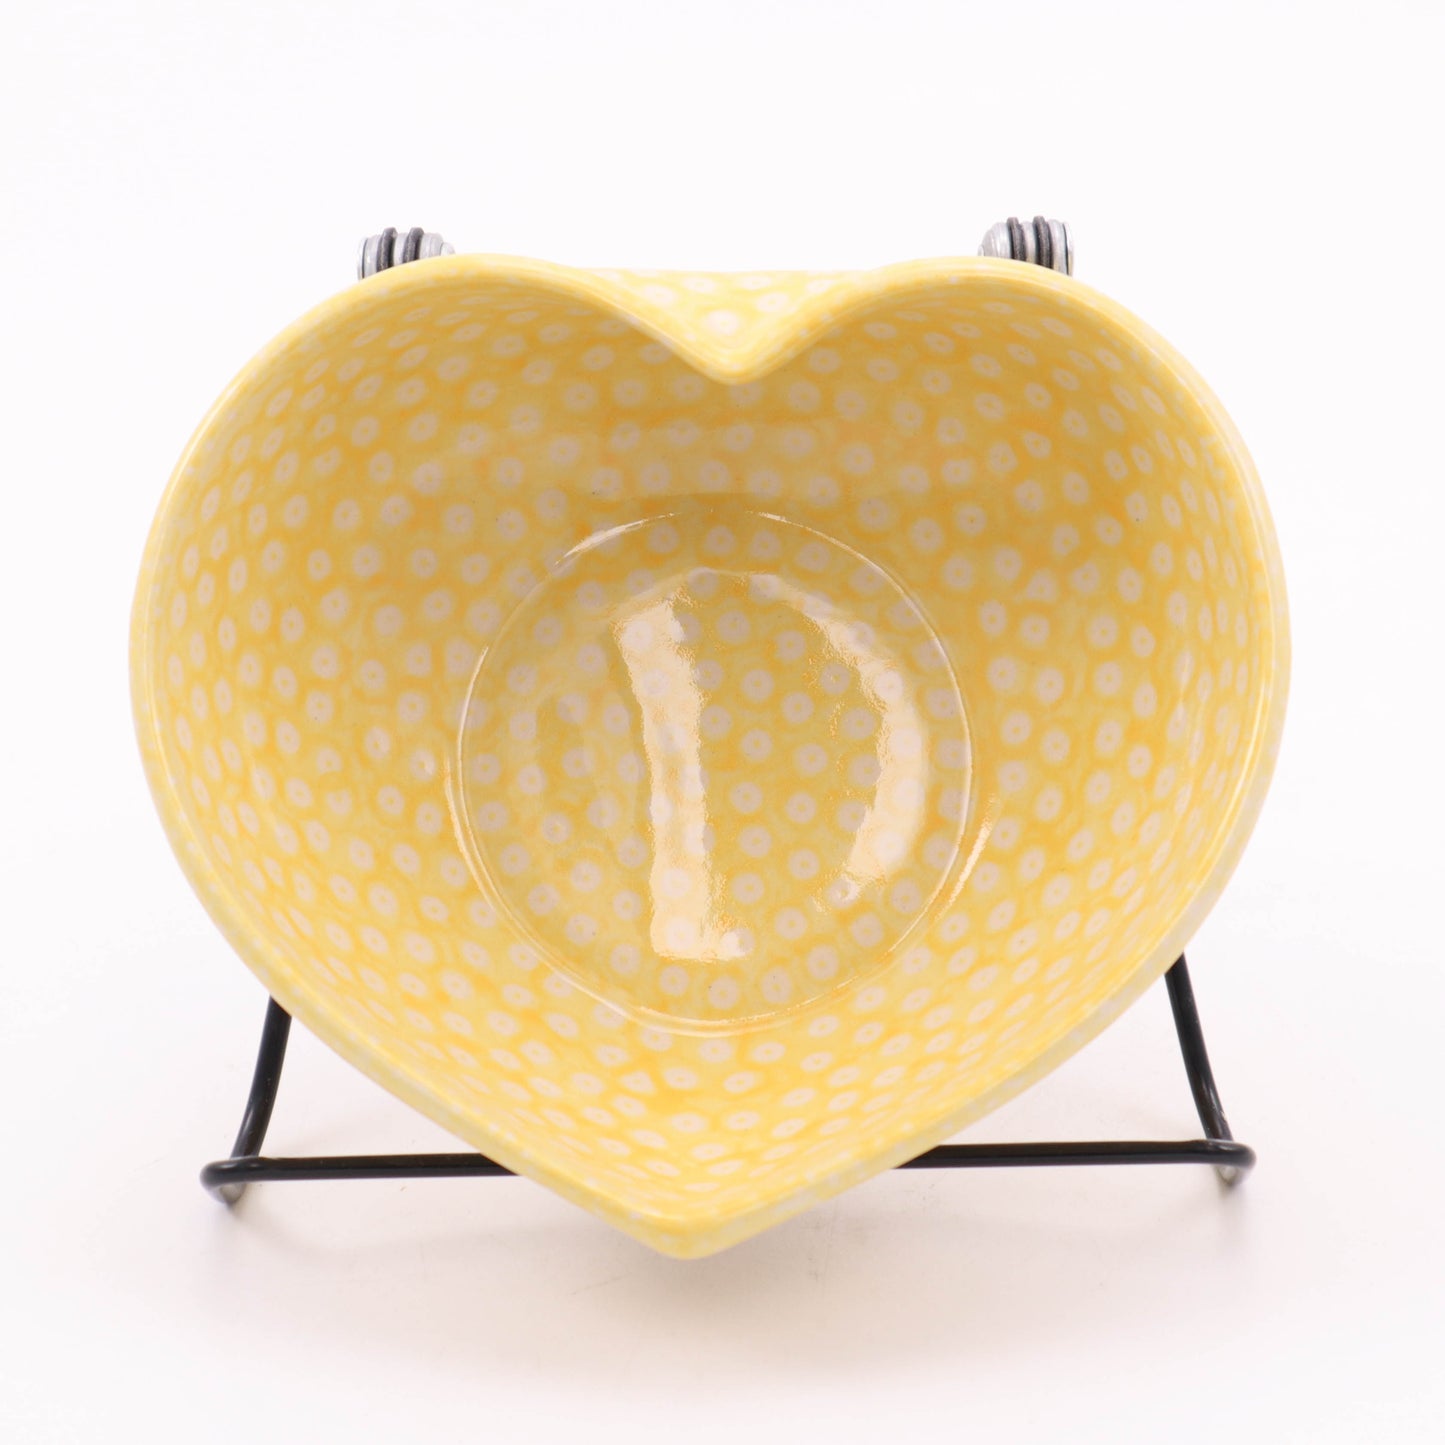 5"x6" Heart Bowl. Pattern: Yellow